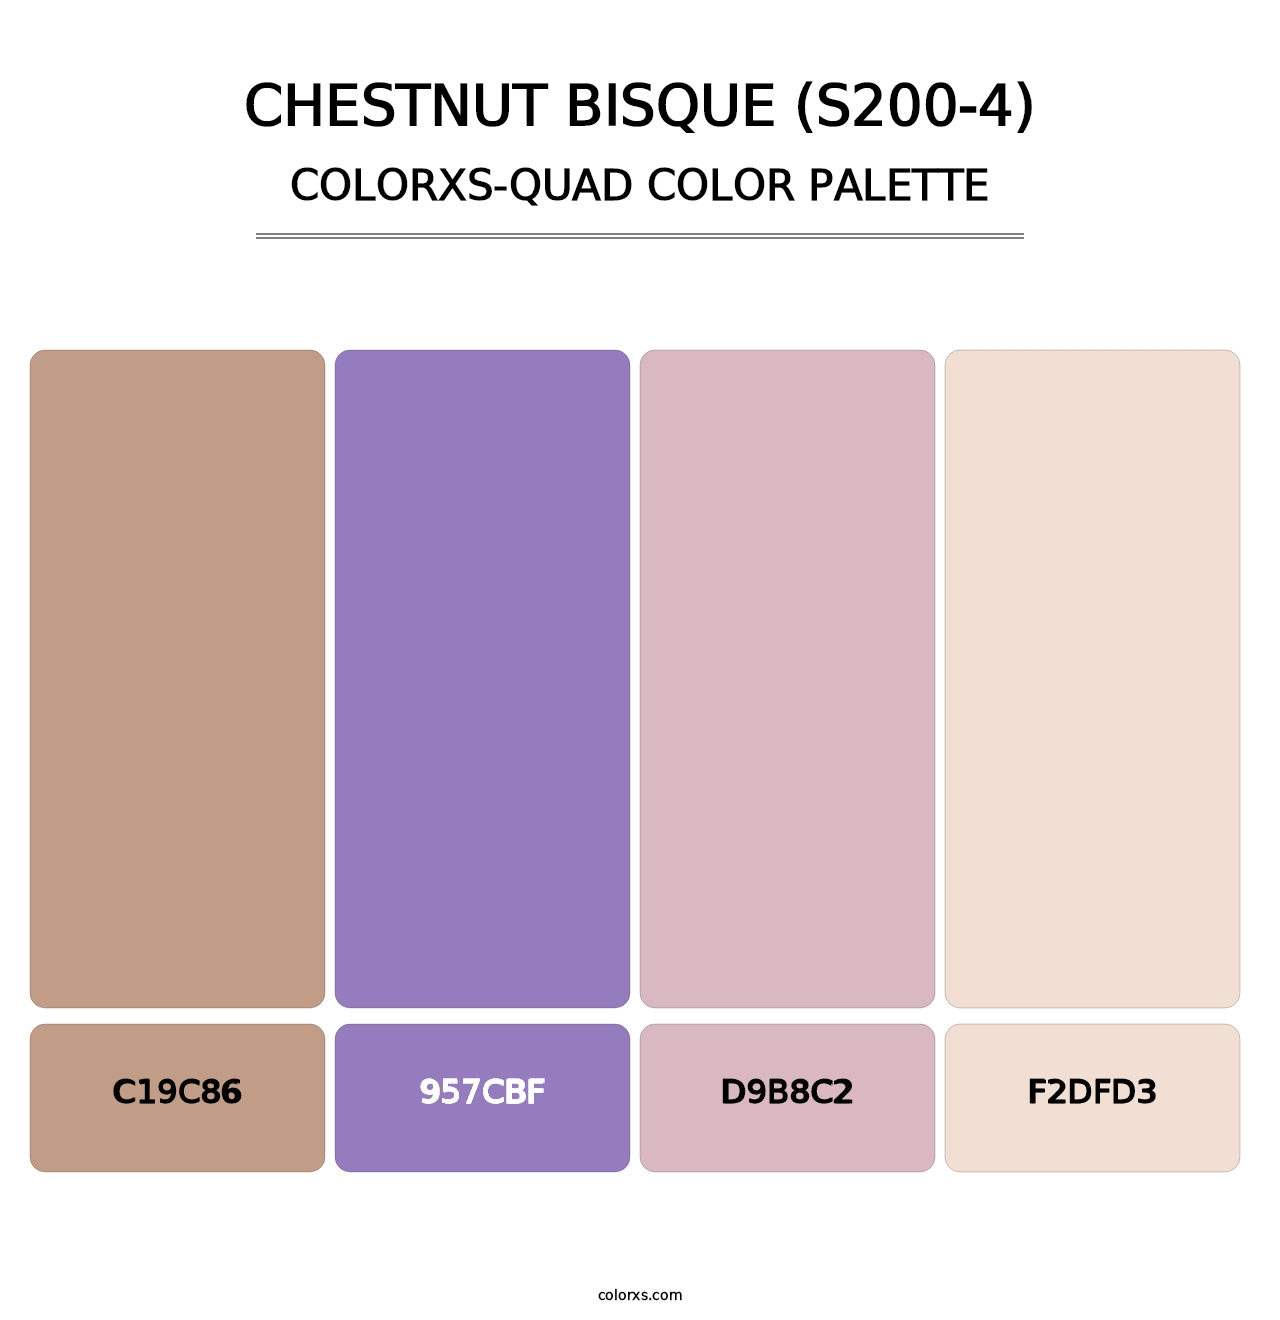 Chestnut Bisque (S200-4) - Colorxs Quad Palette